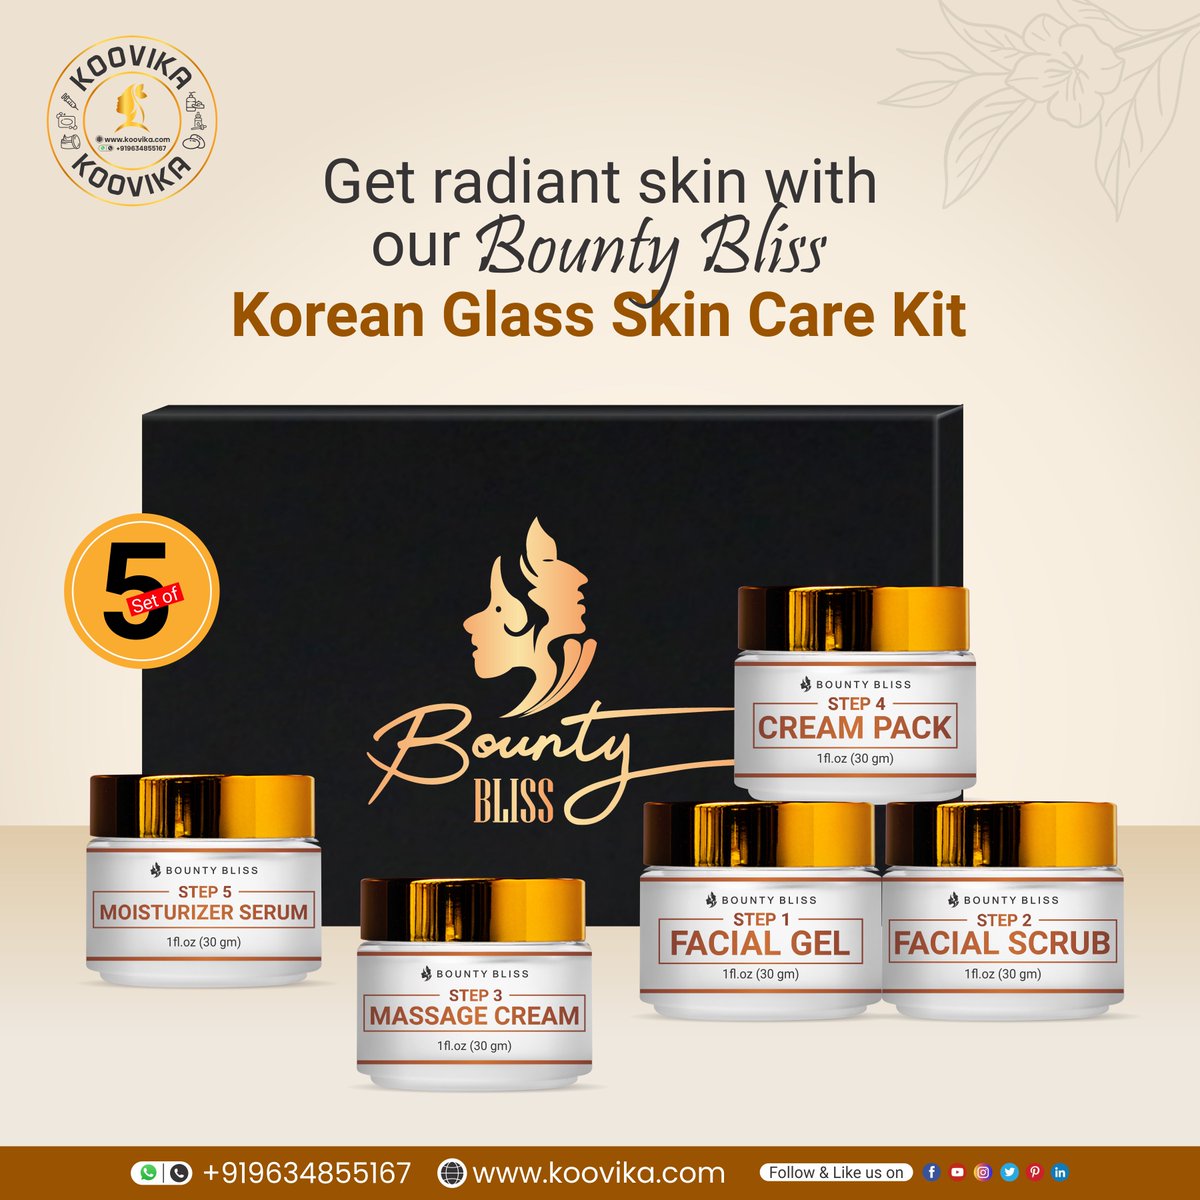 Bounty Bliss #Korean Glass Skin Care Kit
𝐂𝐨𝐧𝐭𝐚𝐜𝐭 𝐮𝐬:
𝐒𝐡𝐨𝐩 𝐍𝐨𝐰: link in bio
𝐂𝐚𝐥𝐥: 9634855167
𝐖𝐡𝐚𝐭𝐬𝐀𝐩𝐩: 919634855167

𝐅𝐨𝐥𝐥𝐨𝐰 𝐔𝐬 𝐅𝐨𝐫 𝐌𝐨𝐫𝐞 𝐔𝐩𝐝𝐚𝐭𝐞𝐬
#koreanskincare